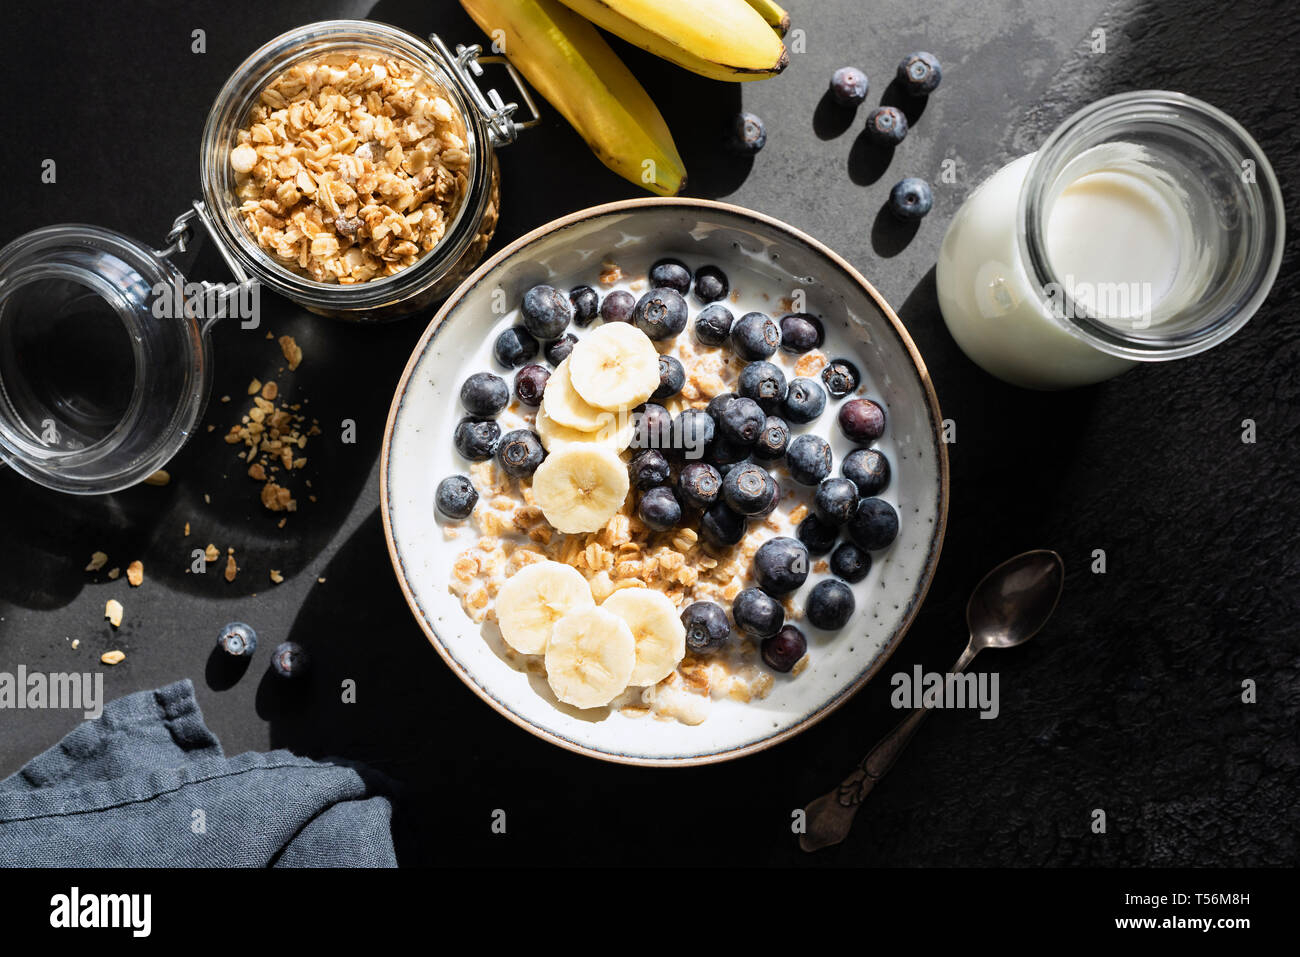 Sana colazione oat cereali con latte, mirtillo e banana nera su sfondo di calcestruzzo. Tabella vista superiore, luce cruda fotografia di cibo Foto Stock